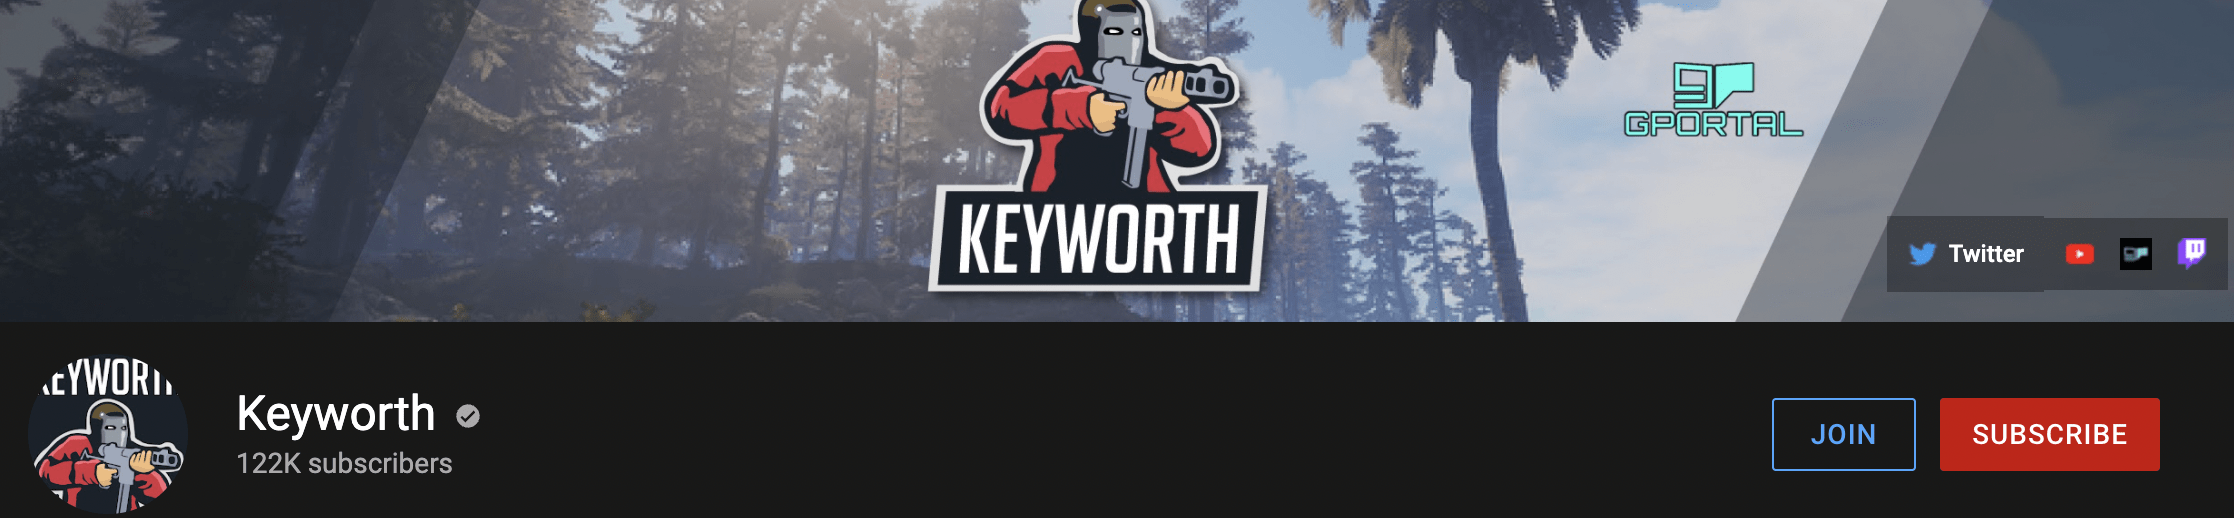 Keyworth Youtube Channel